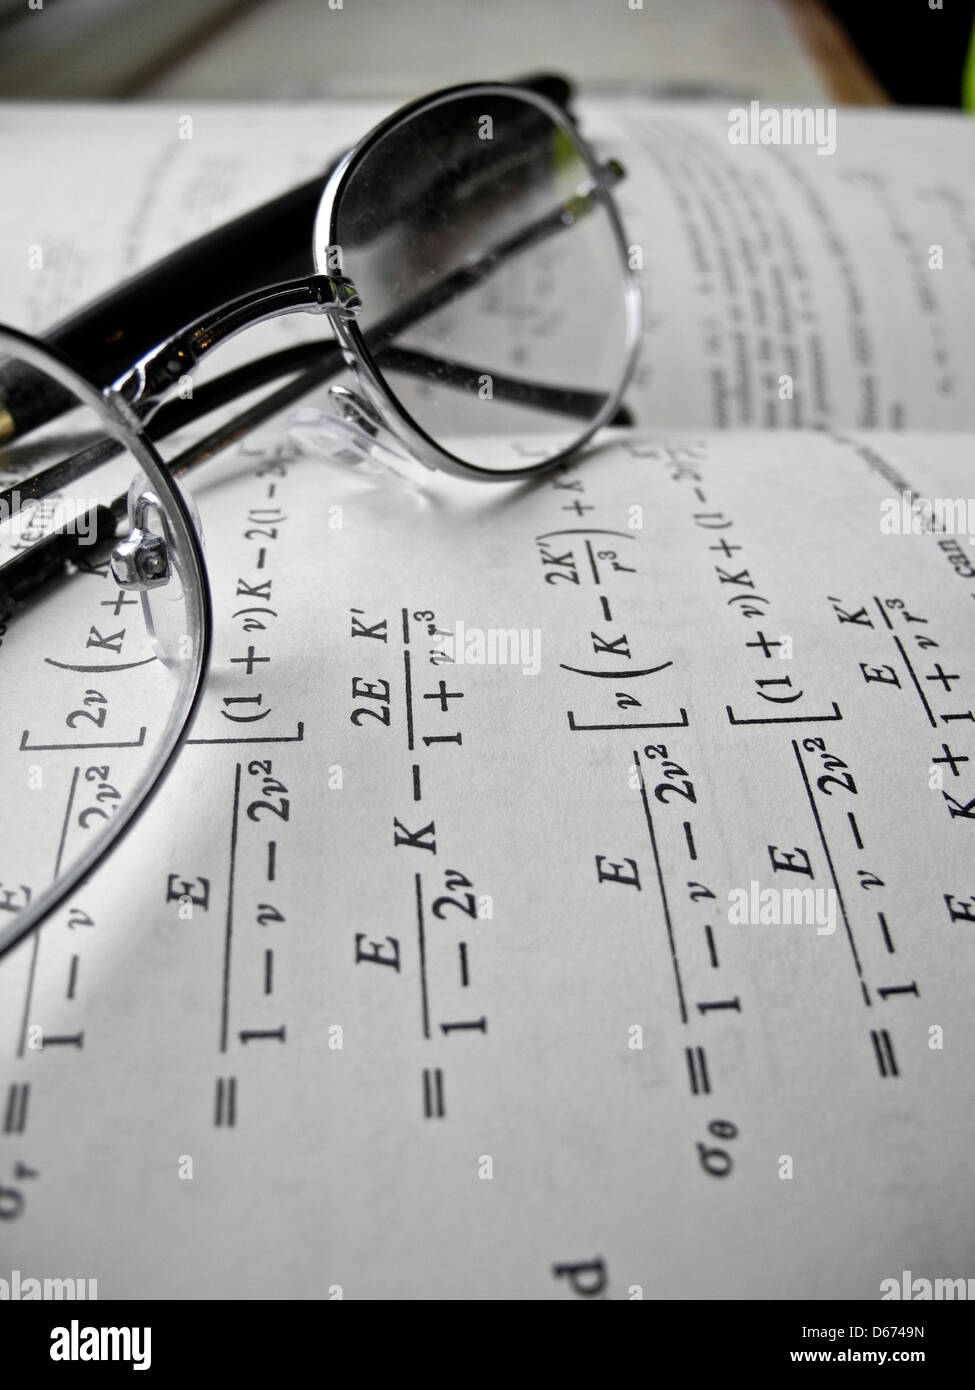 Equazioni matematiche e calcoli per gli studi e la pratica ingegneristica. Foto Stock